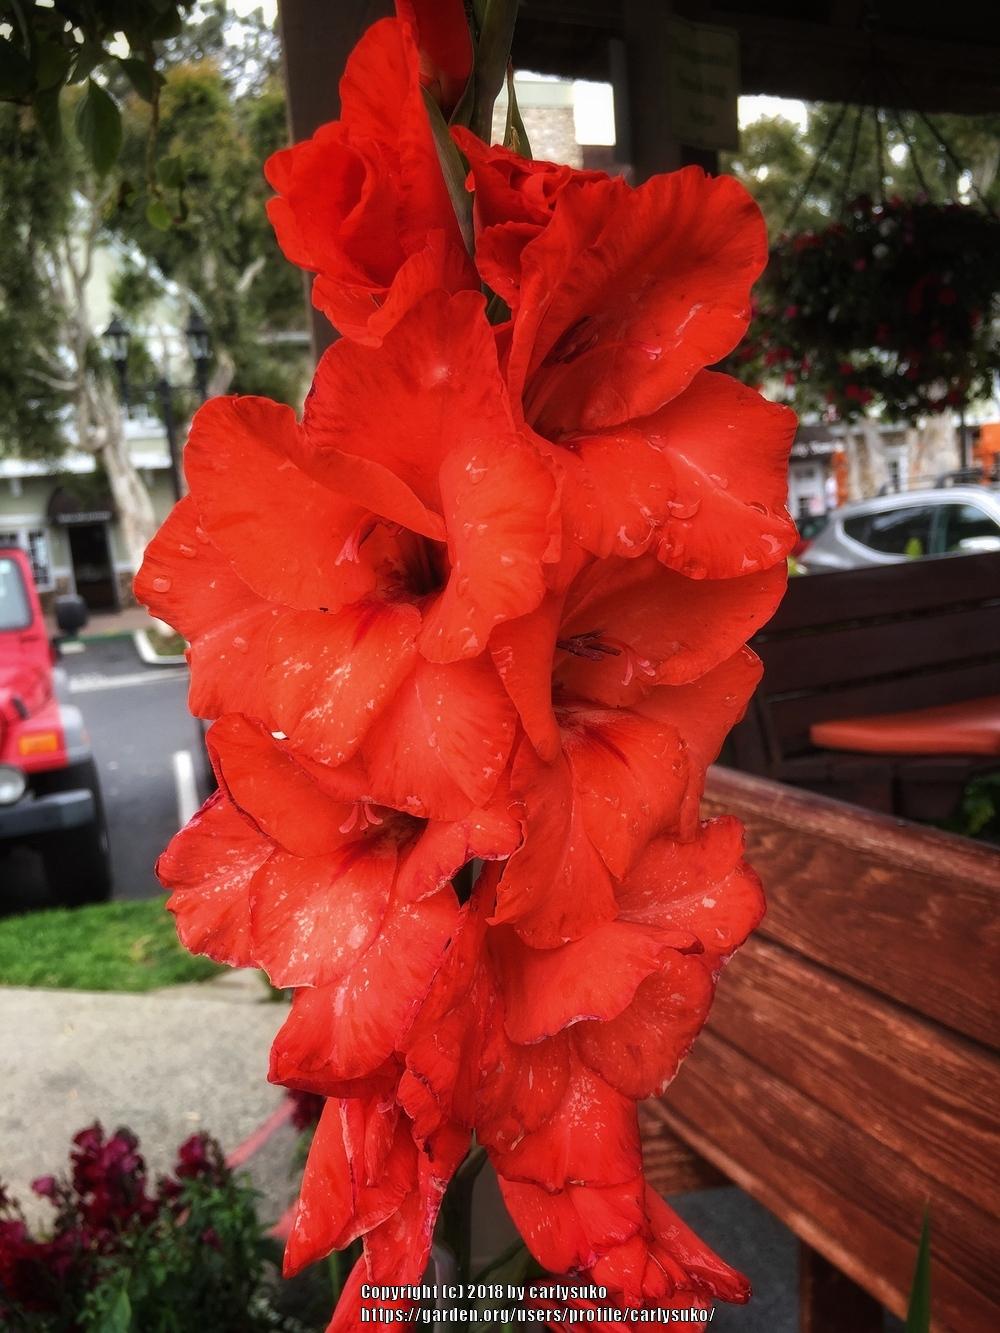 Photo of Gladiola (Gladiolus) uploaded by carlysuko